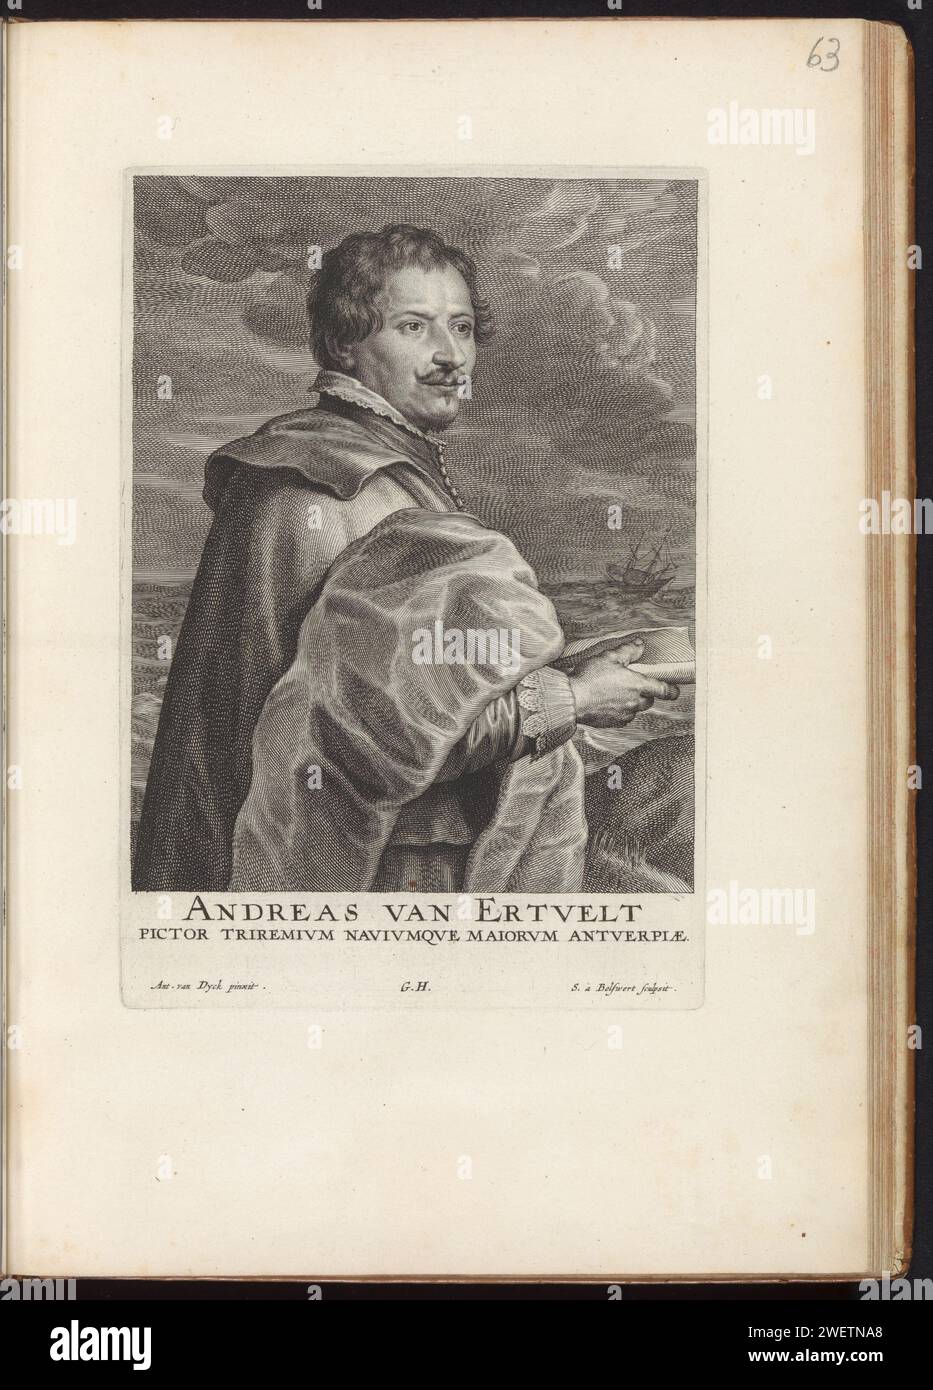 Ritratto del pittore Andries van Eertvelt, 1645 - 1646 stampa questa stampa fa parte di un album. ritratto con incisione su carta, autoritratto del pittore Foto Stock